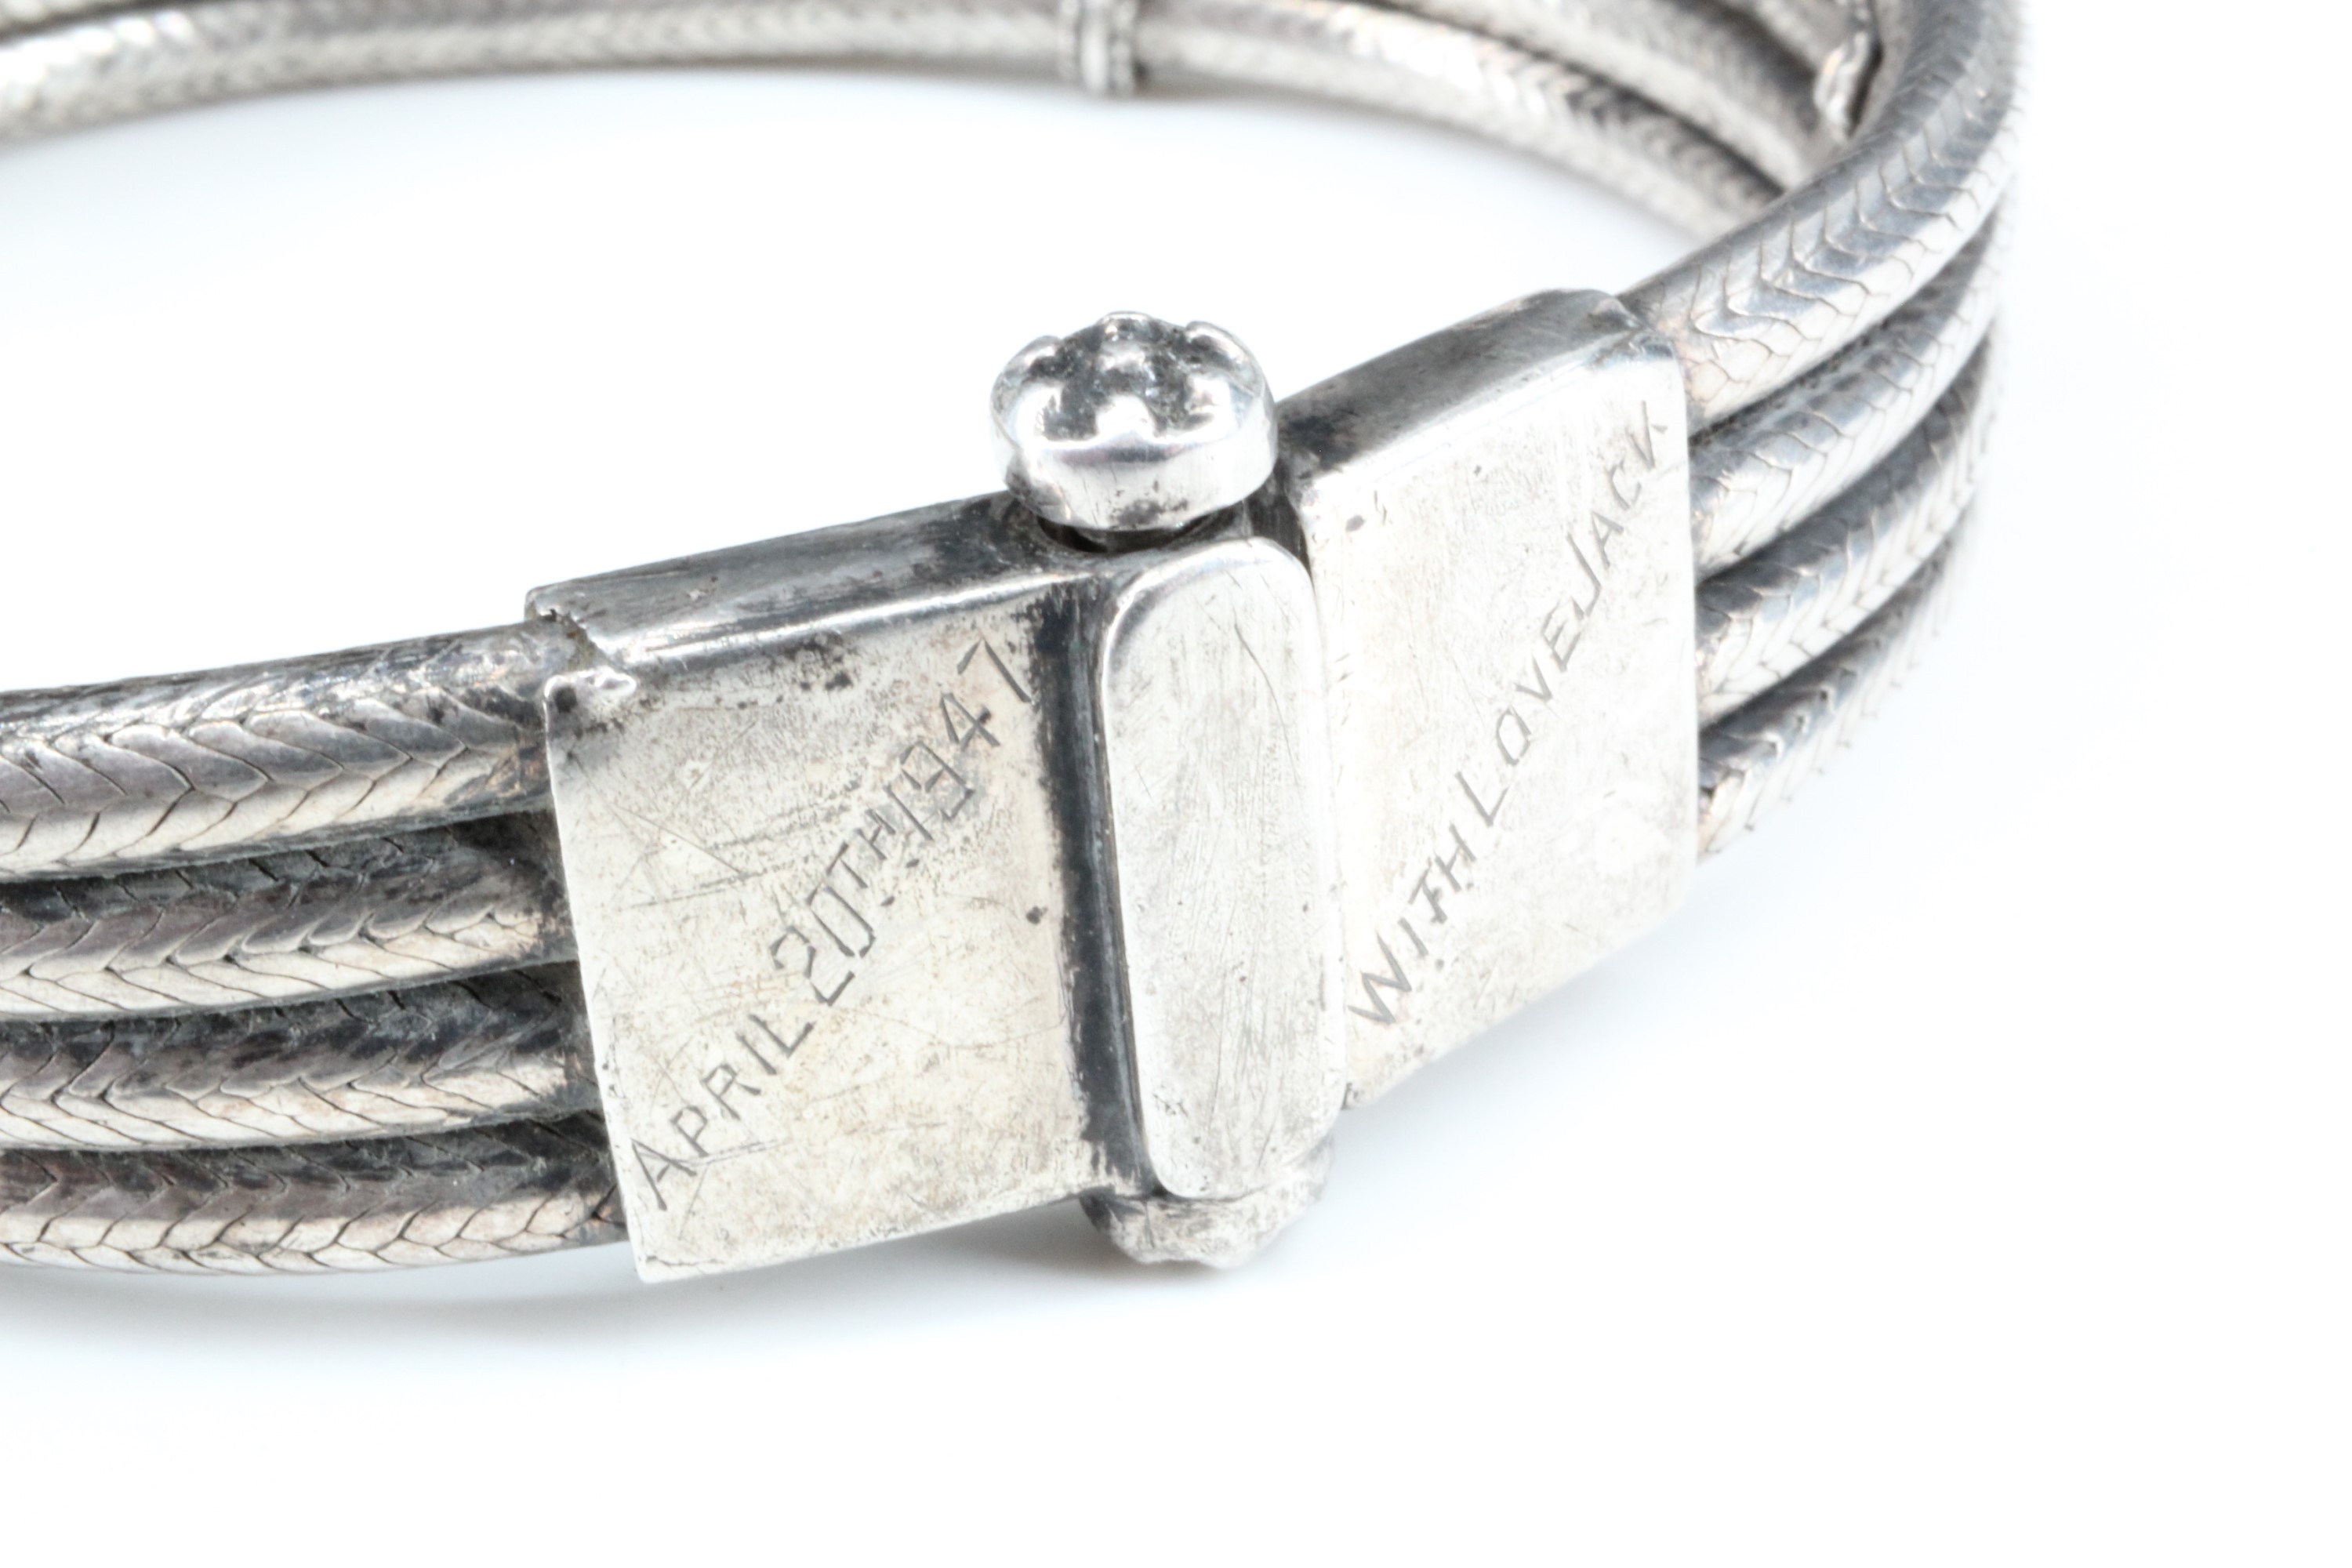 Two silver charm bracelets together with a 1940s quadruple snake link bracelet, 110 g - Image 2 of 2